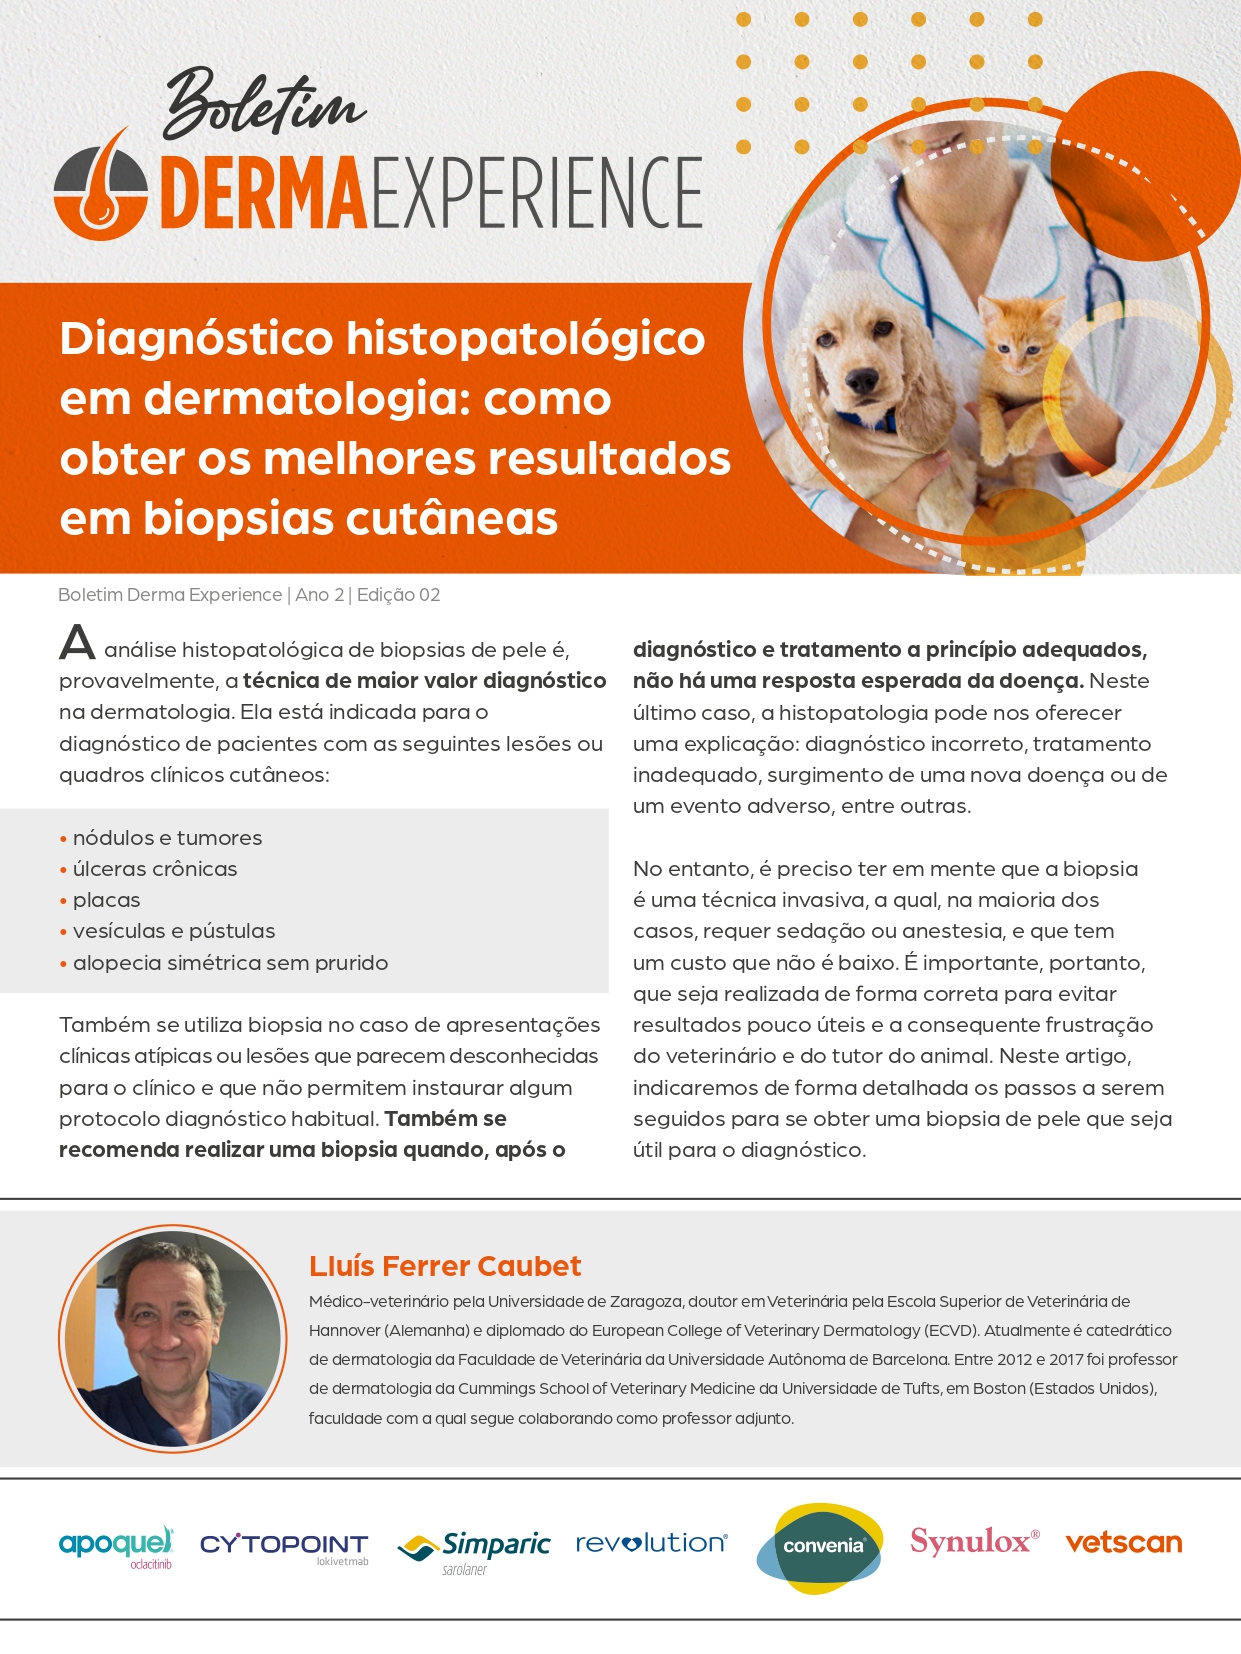 Diagnóstico histopatológico em dermatologia: como obter os melhores resultados em biopsias cutâneas